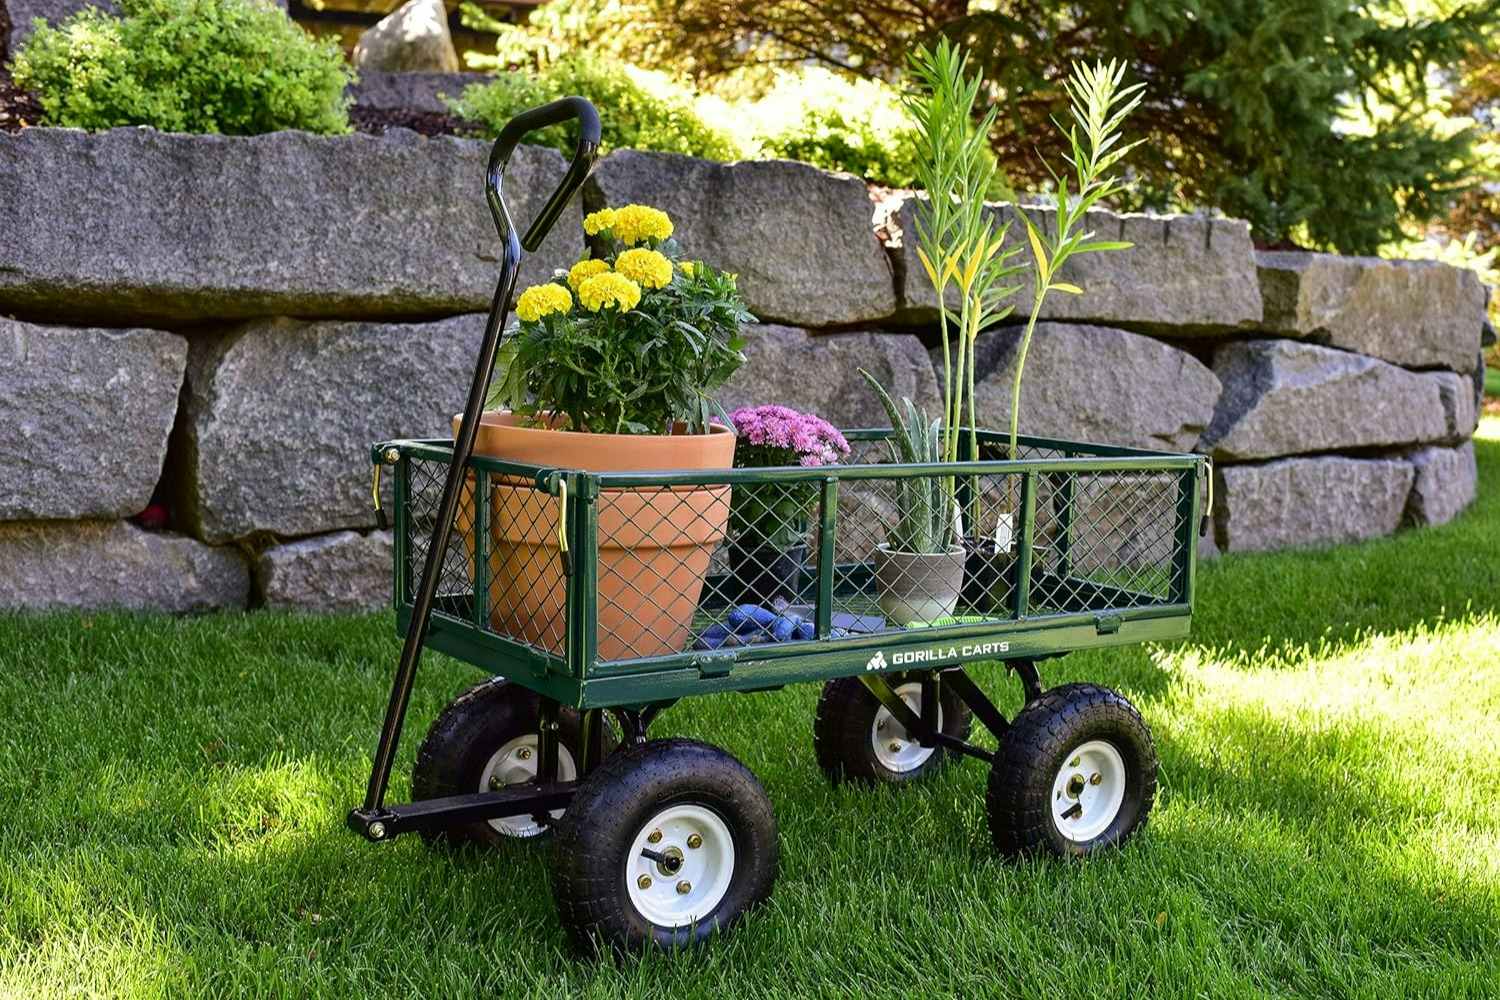 Gorilla Carts Steel Garden Cart, $89 on Amazon (Reg. $139)